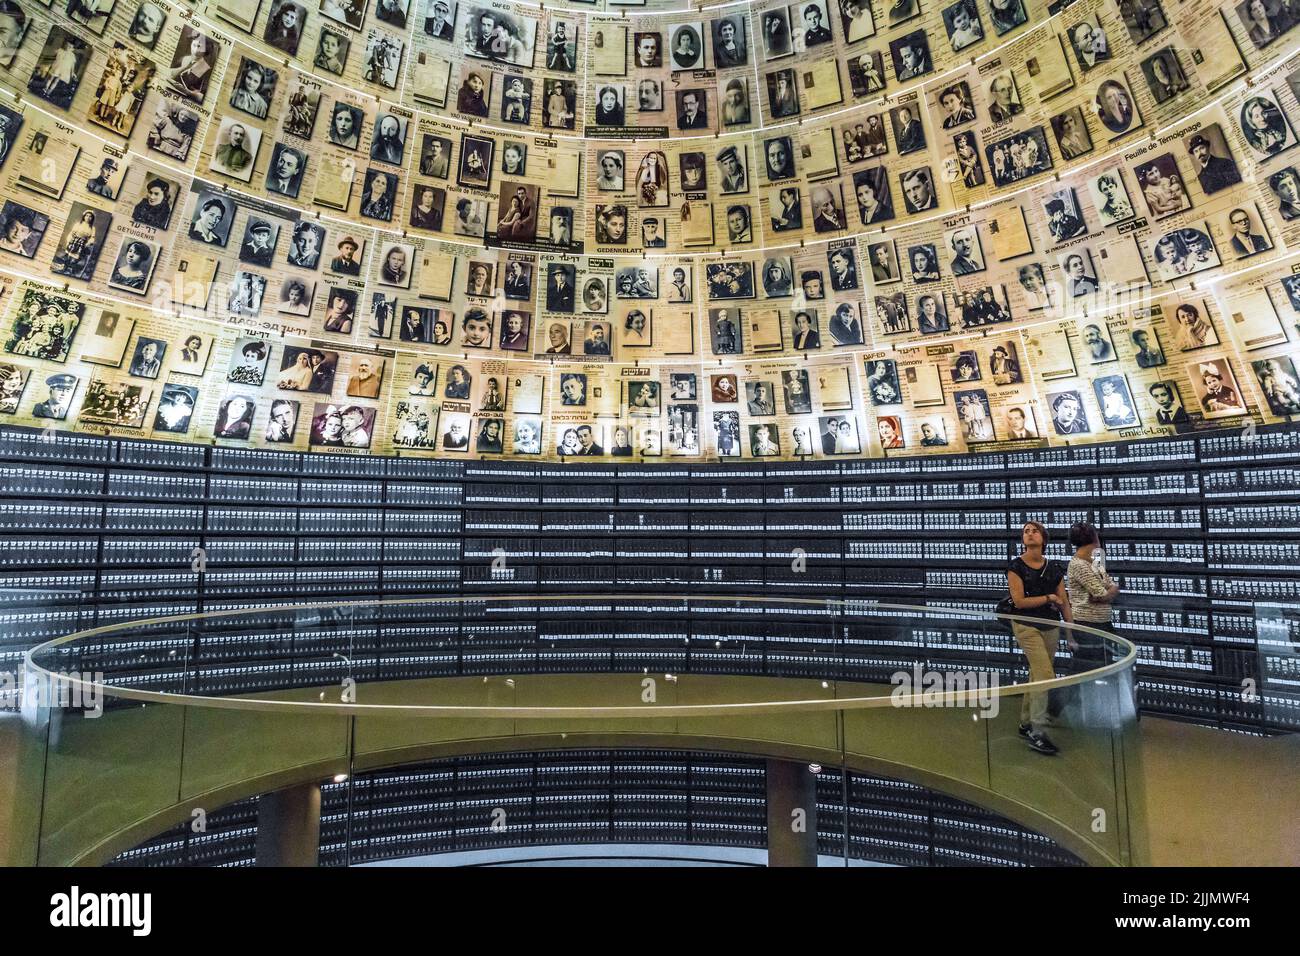 GERUSALEMME, ISRAELE - 24 SETTEMBRE 2017: Questa è la Sala dei nomi nel Museo storico del Memoriale dell'Olocausto (Yad Vashem). Foto Stock